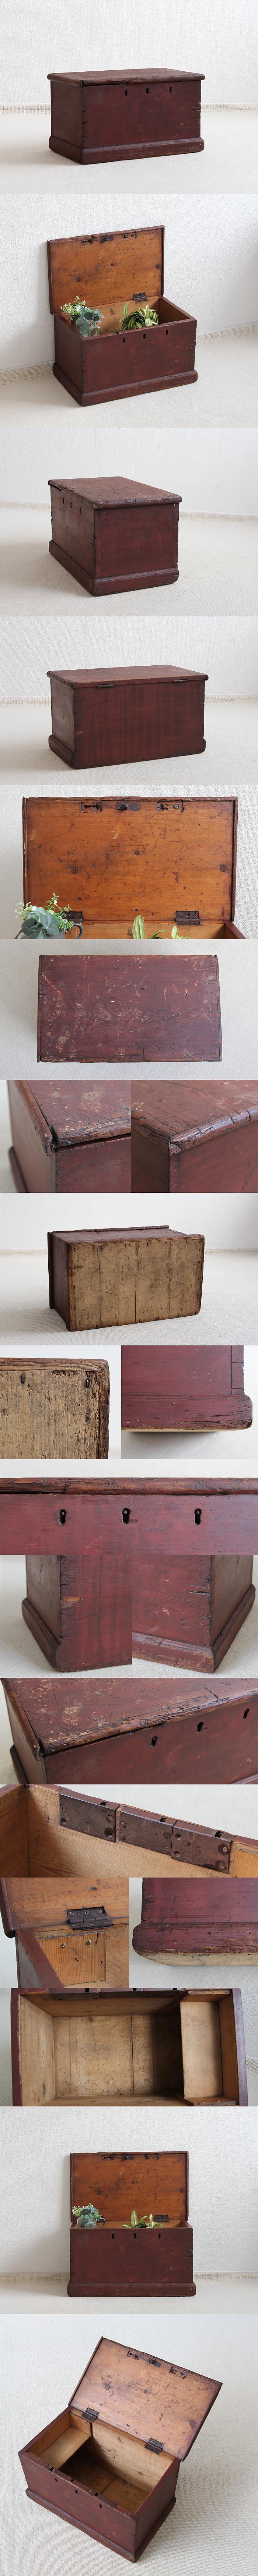 イギリス アンティーク オールドパインボックス 収納 木箱 ケース 古木「ツールボックス」V-509